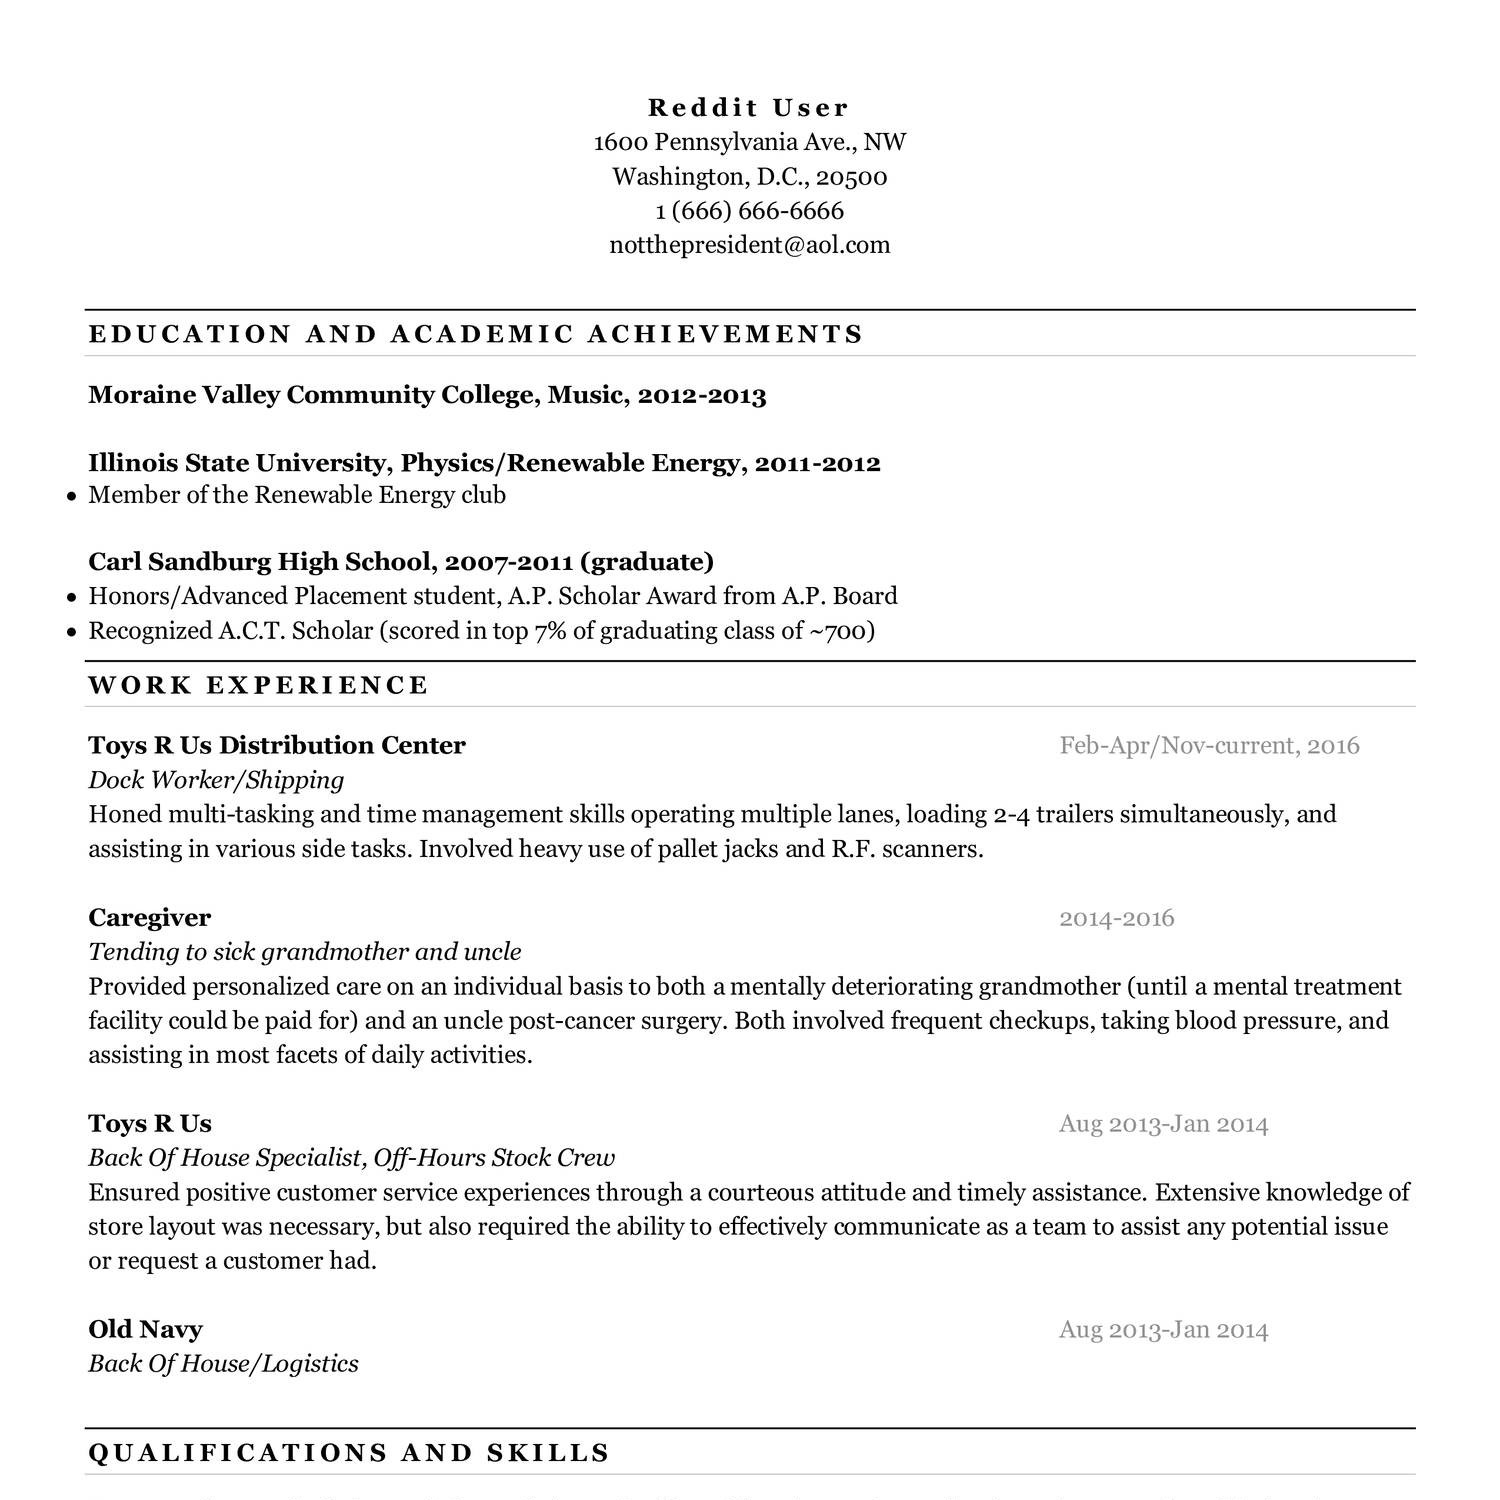 resume services reddit